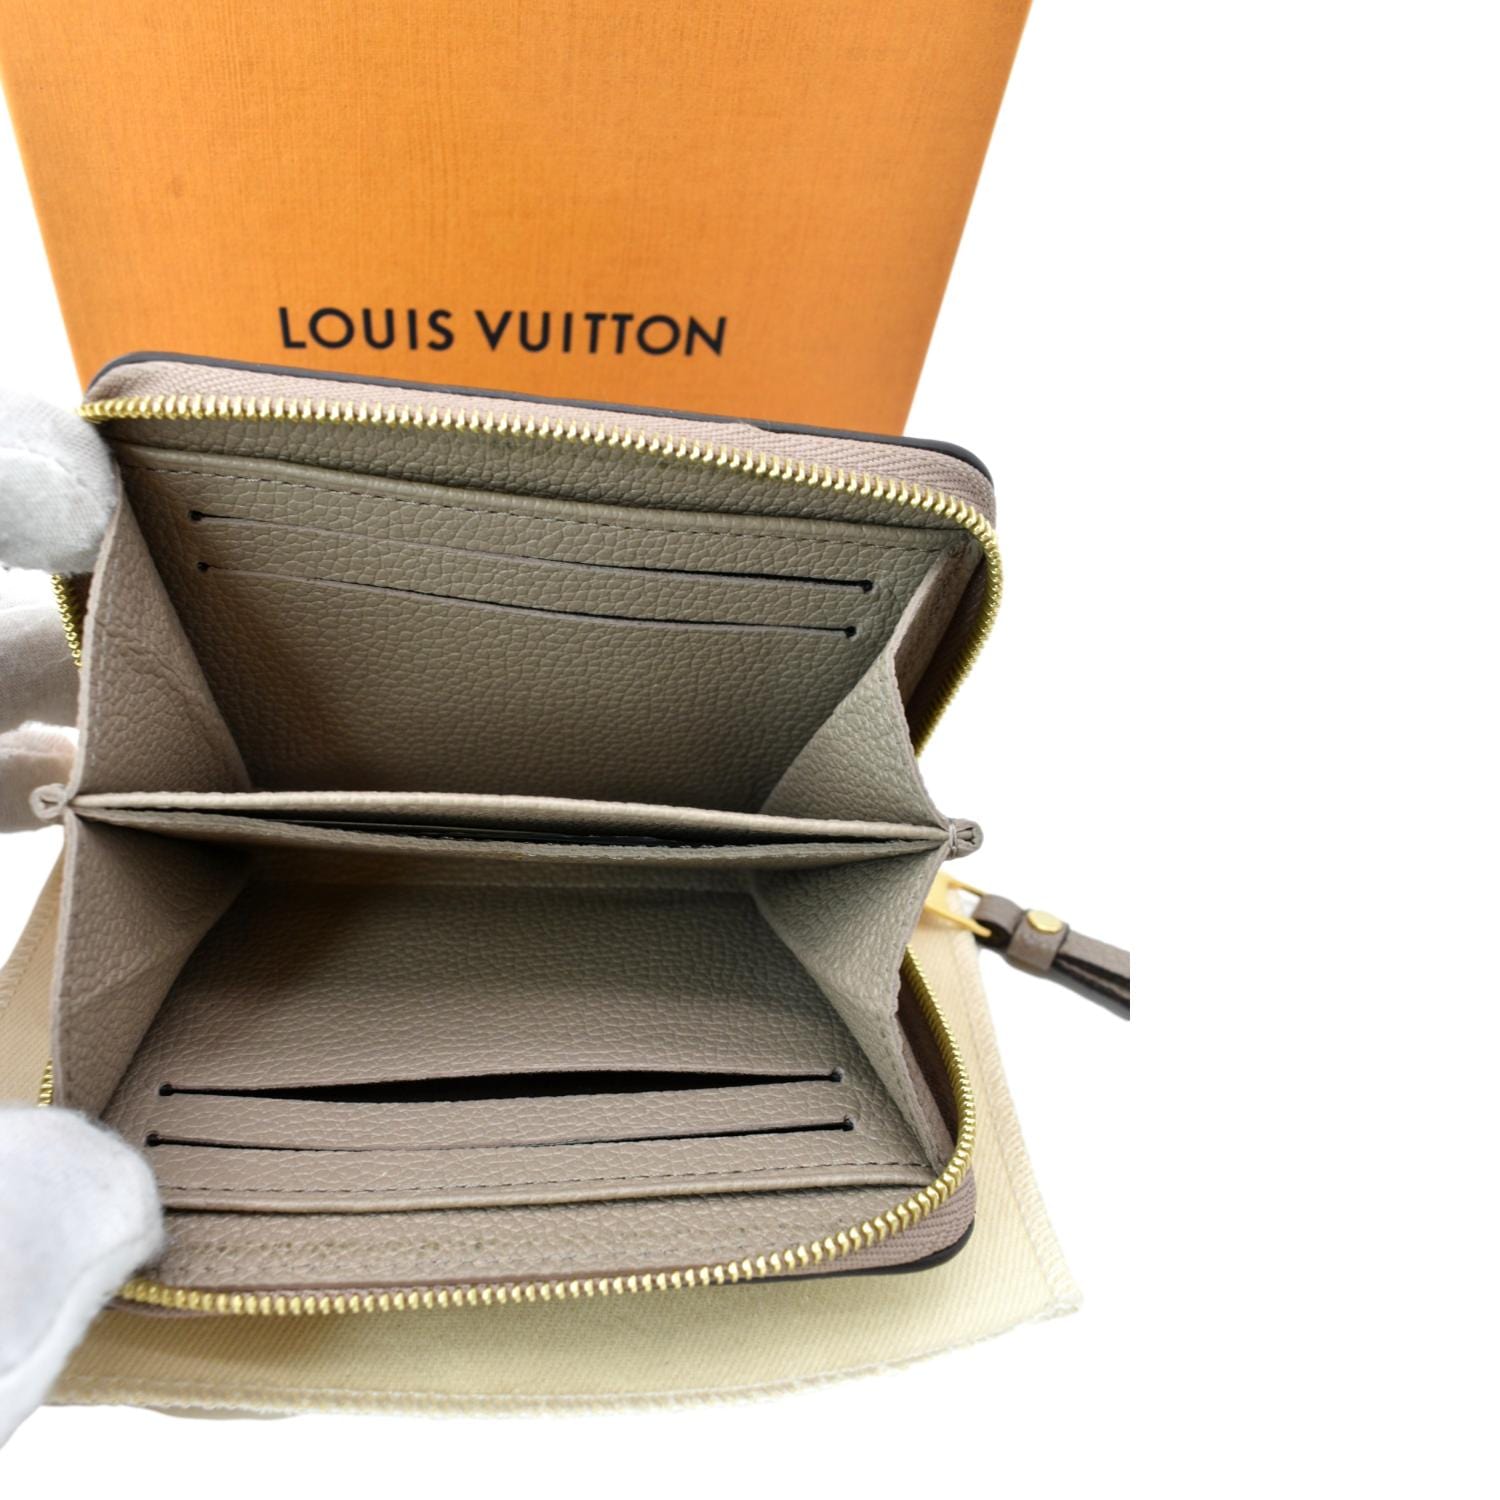 Louis Vuitton MONOGRAM EMPREINTE Champs elysées tie pin (M65042)